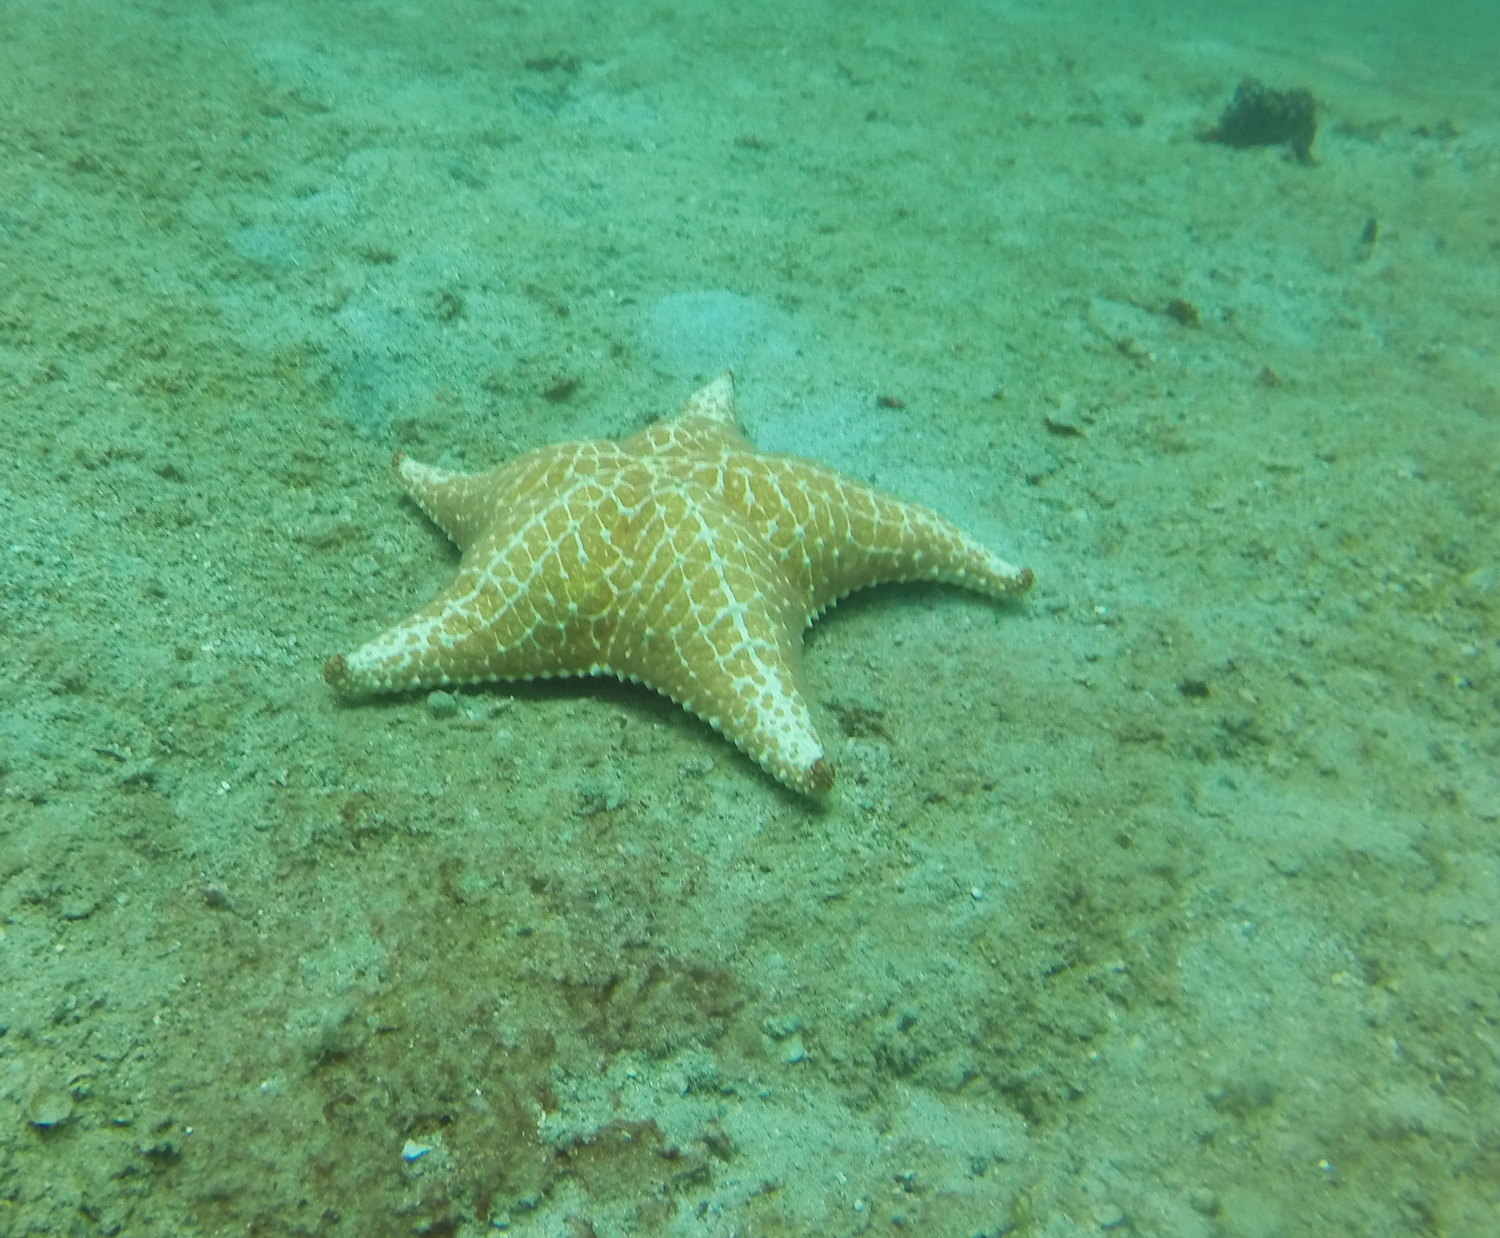 Pin cushion starfish Caribbean.